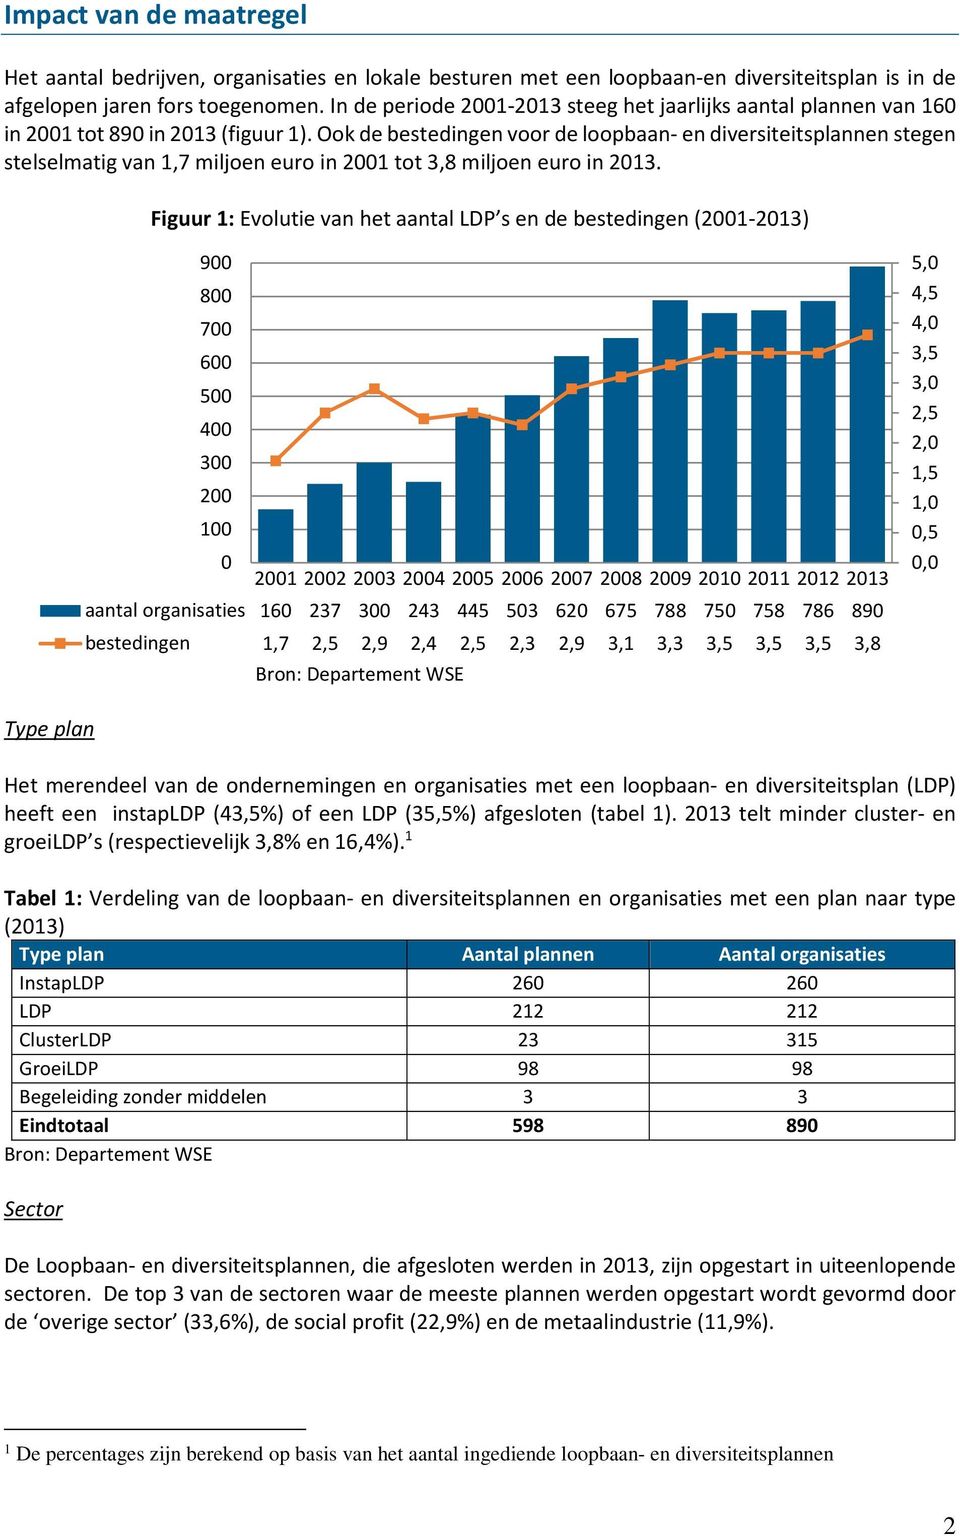 Ook de bestedingen voor de loopbaan- en diversiteitsplannen stegen stelselmatig van 1,7 miljoen euro in 2001 tot 3,8 miljoen euro in 2013.